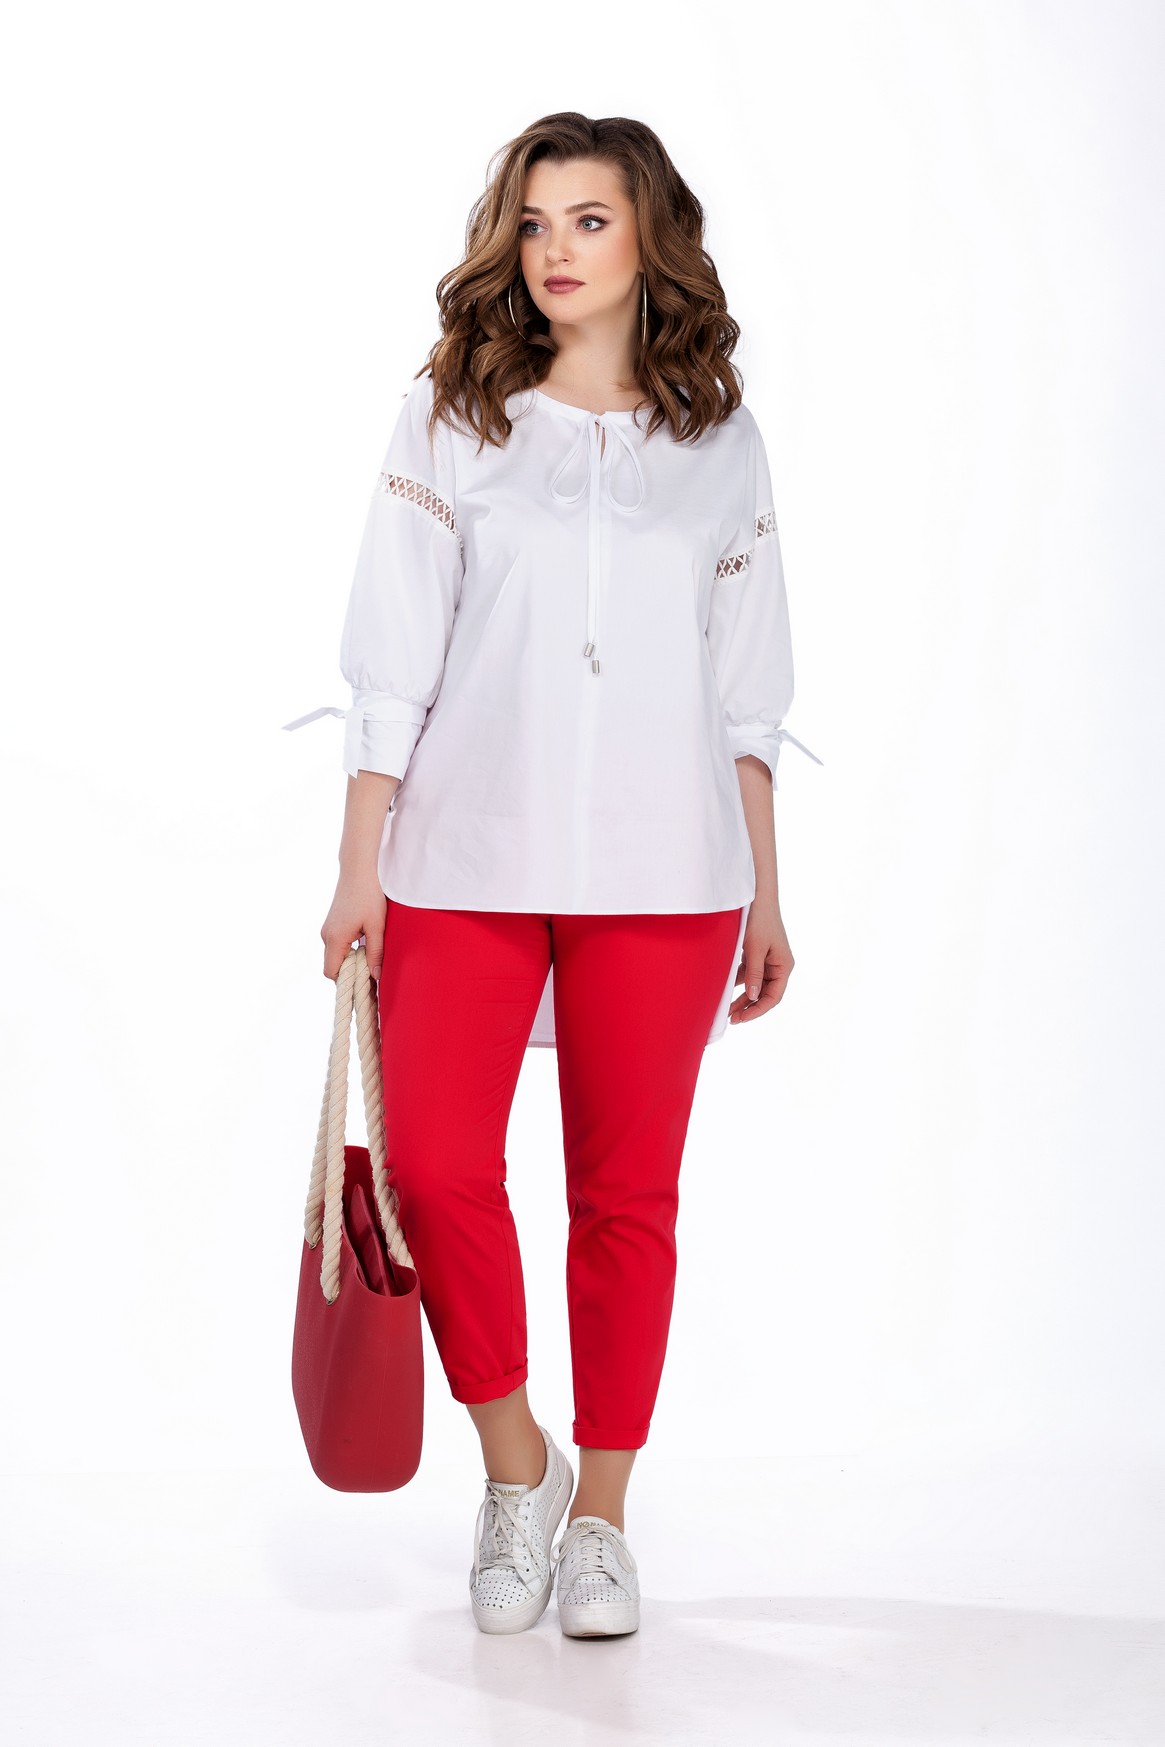 Комплект из красных брюк и белой блузы с декором на рукаве